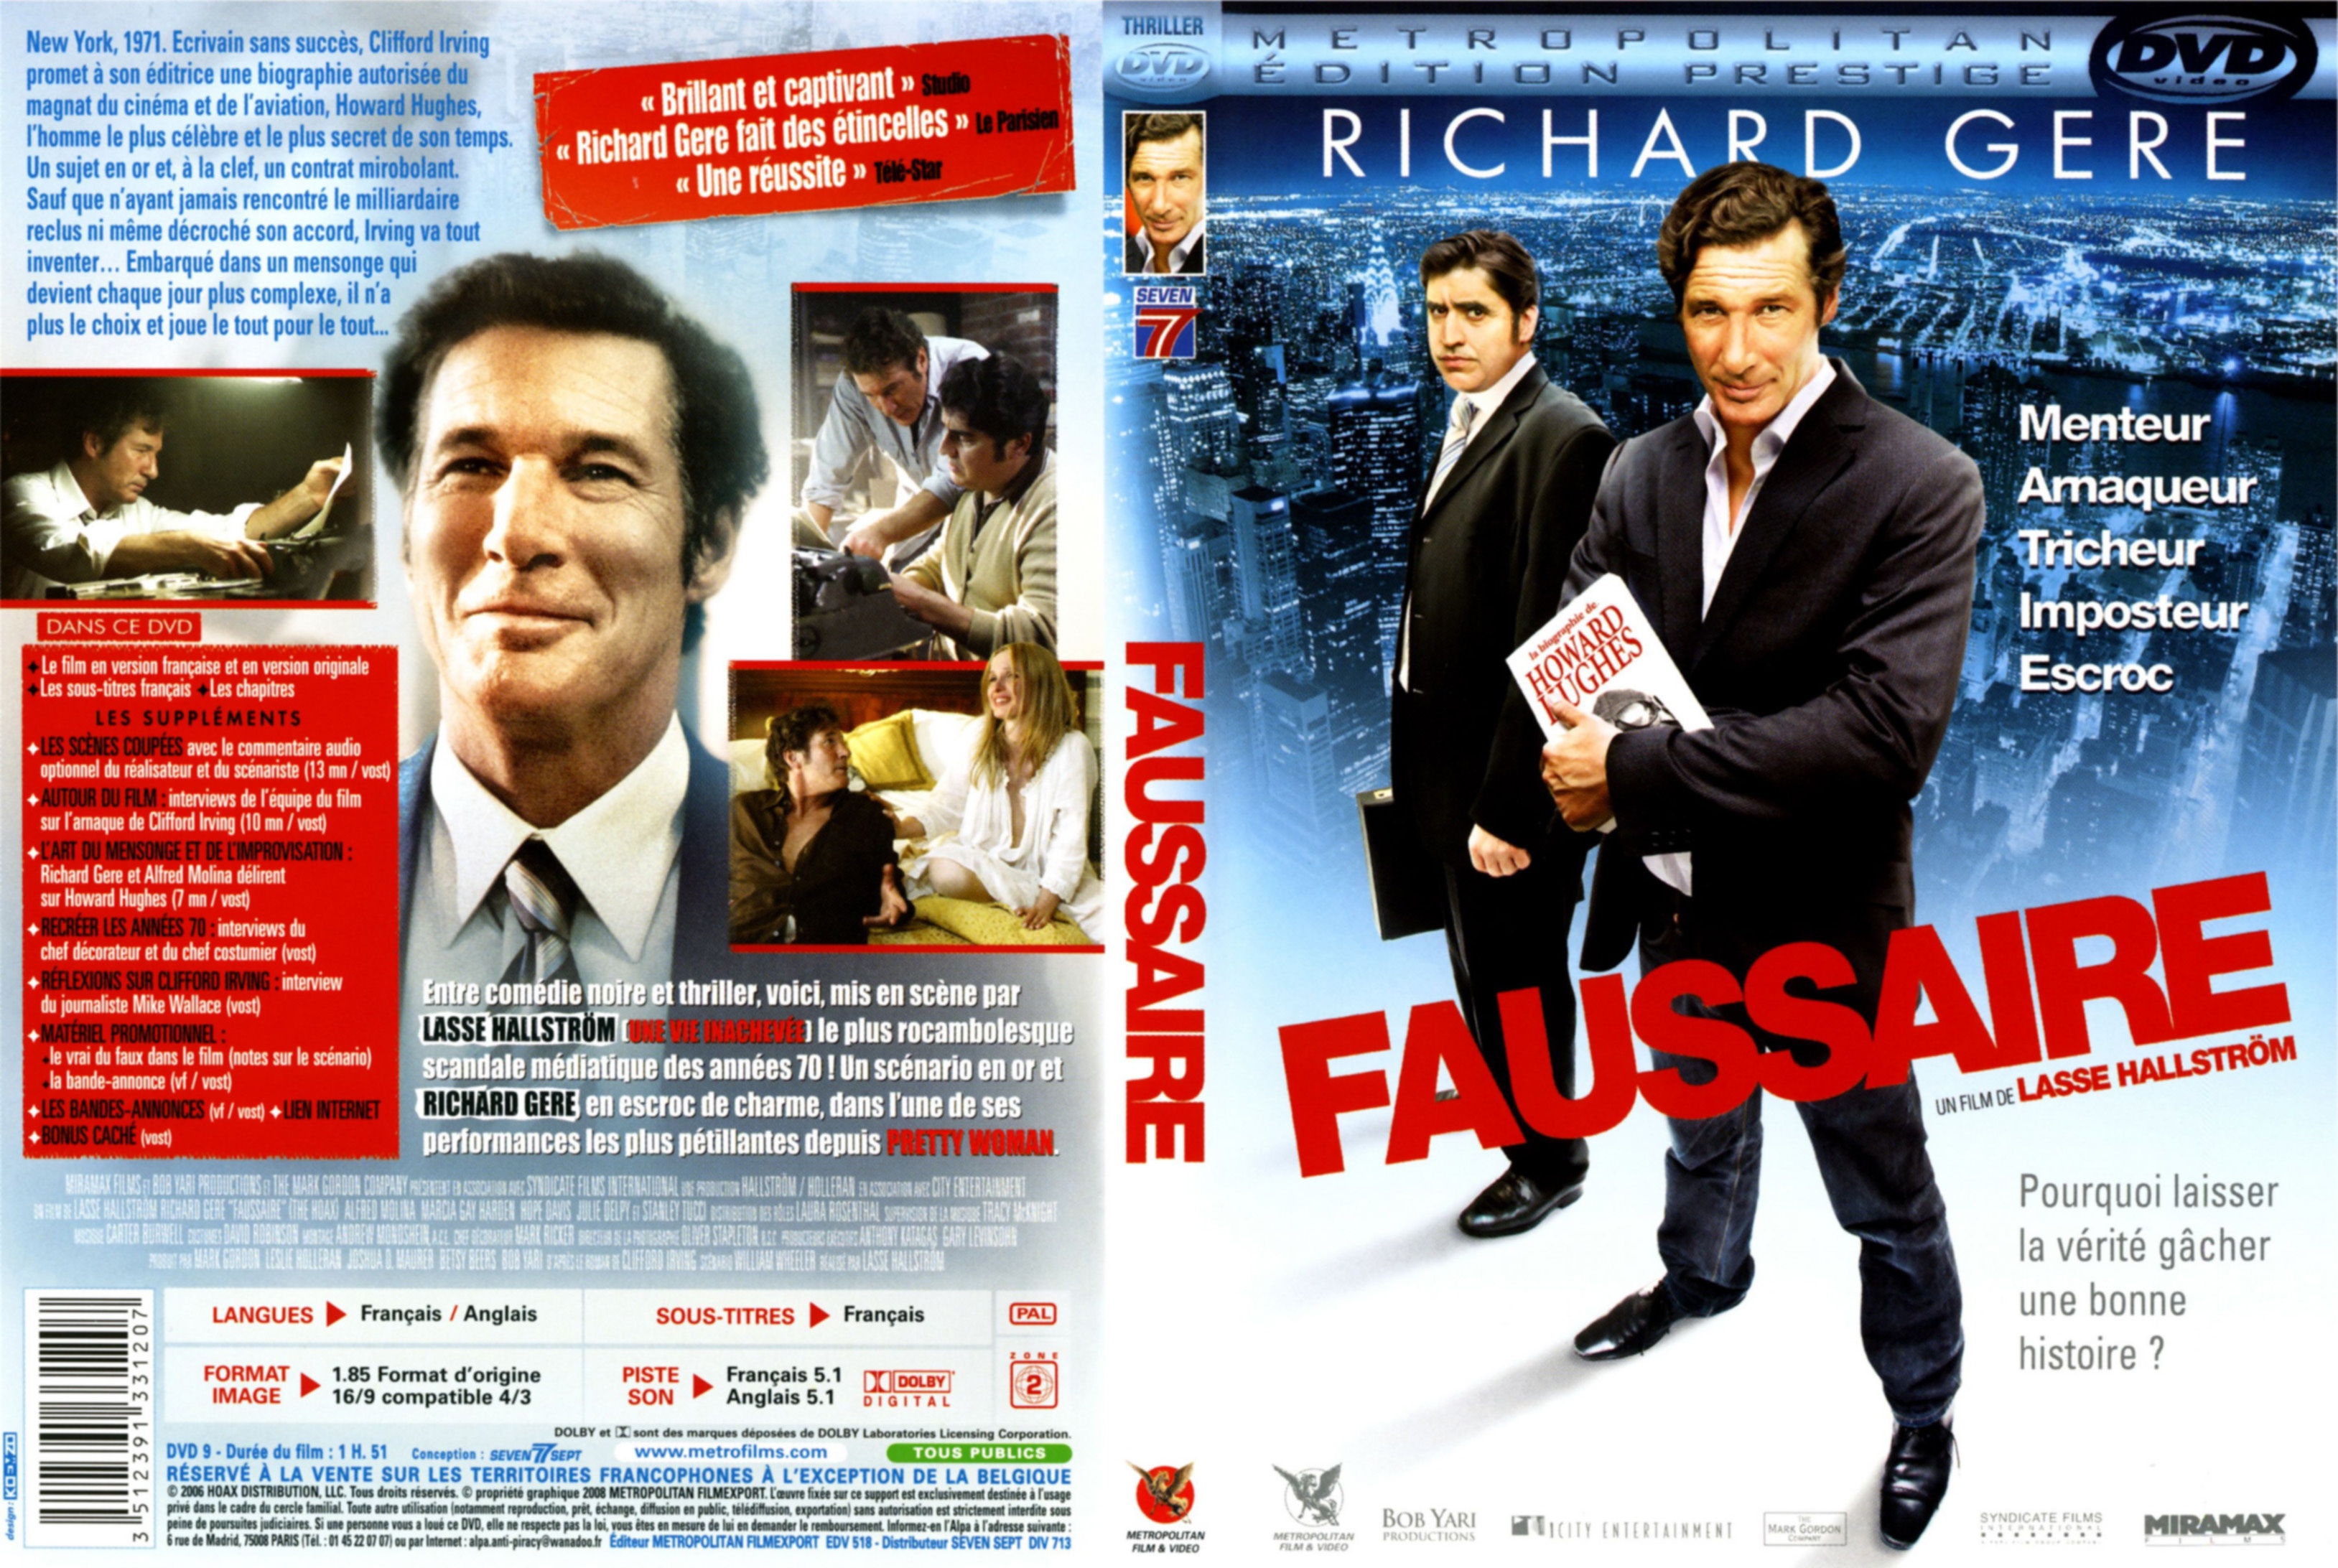 Jaquette DVD Faussaire v3